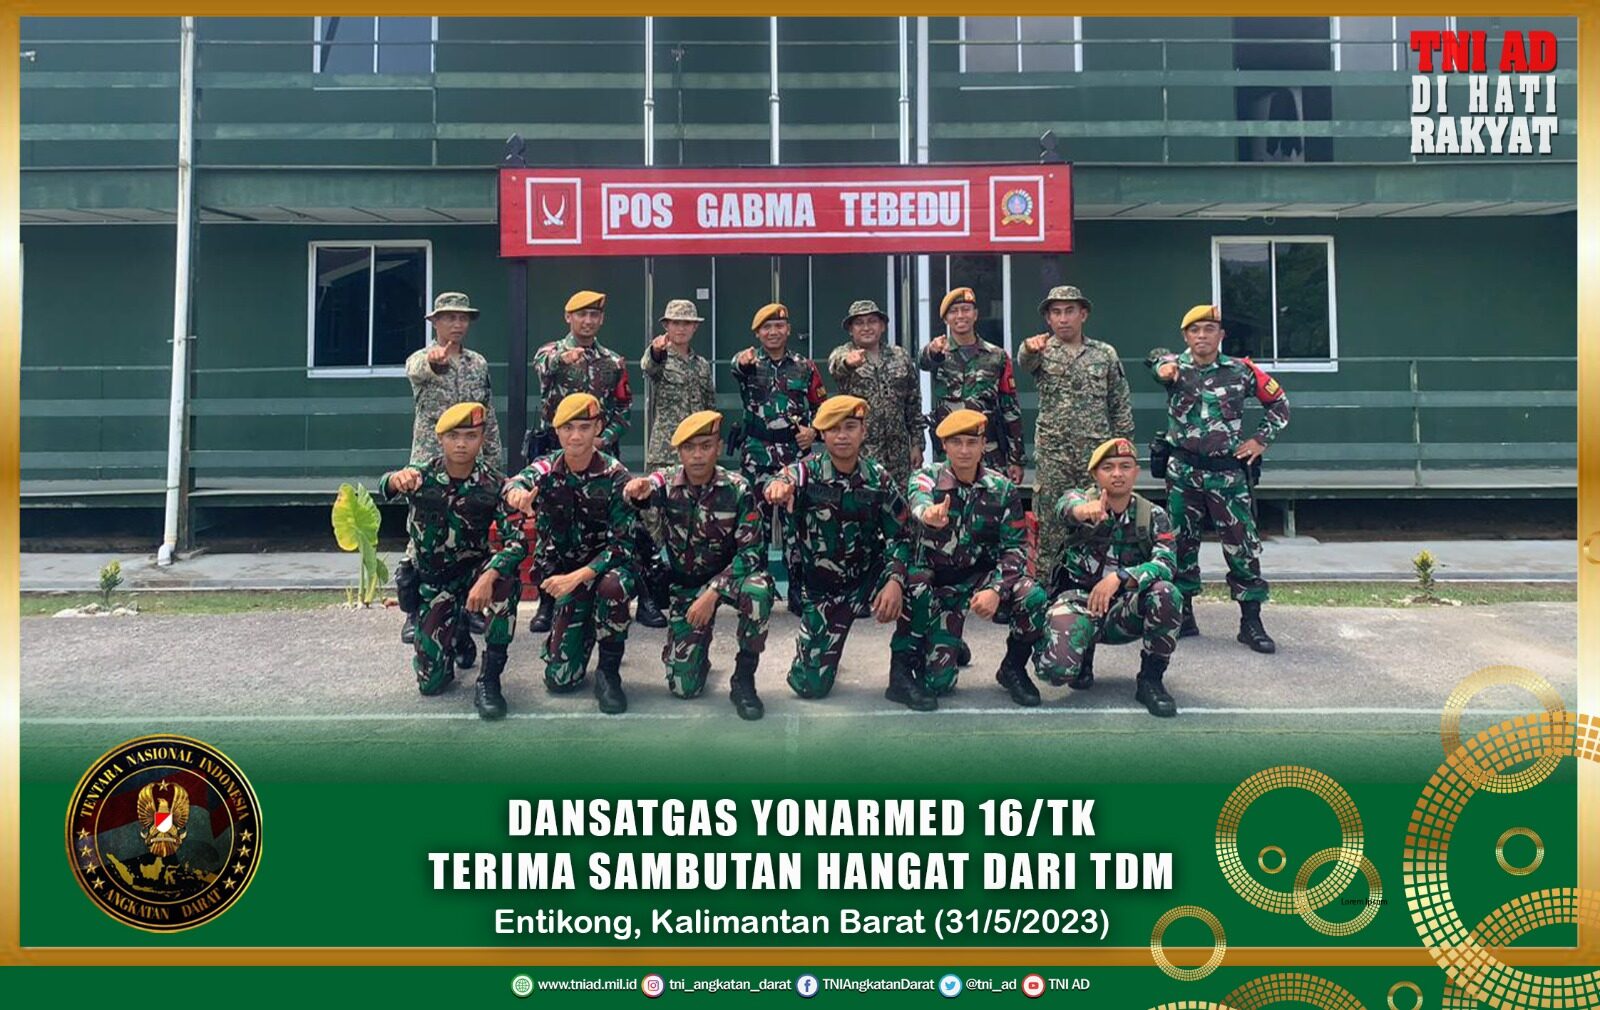 Kunjungan di Pos Gabma Tebedu, Dansatgas Yonarmed 16/TK Terima Sambutan Hangat dari TDM